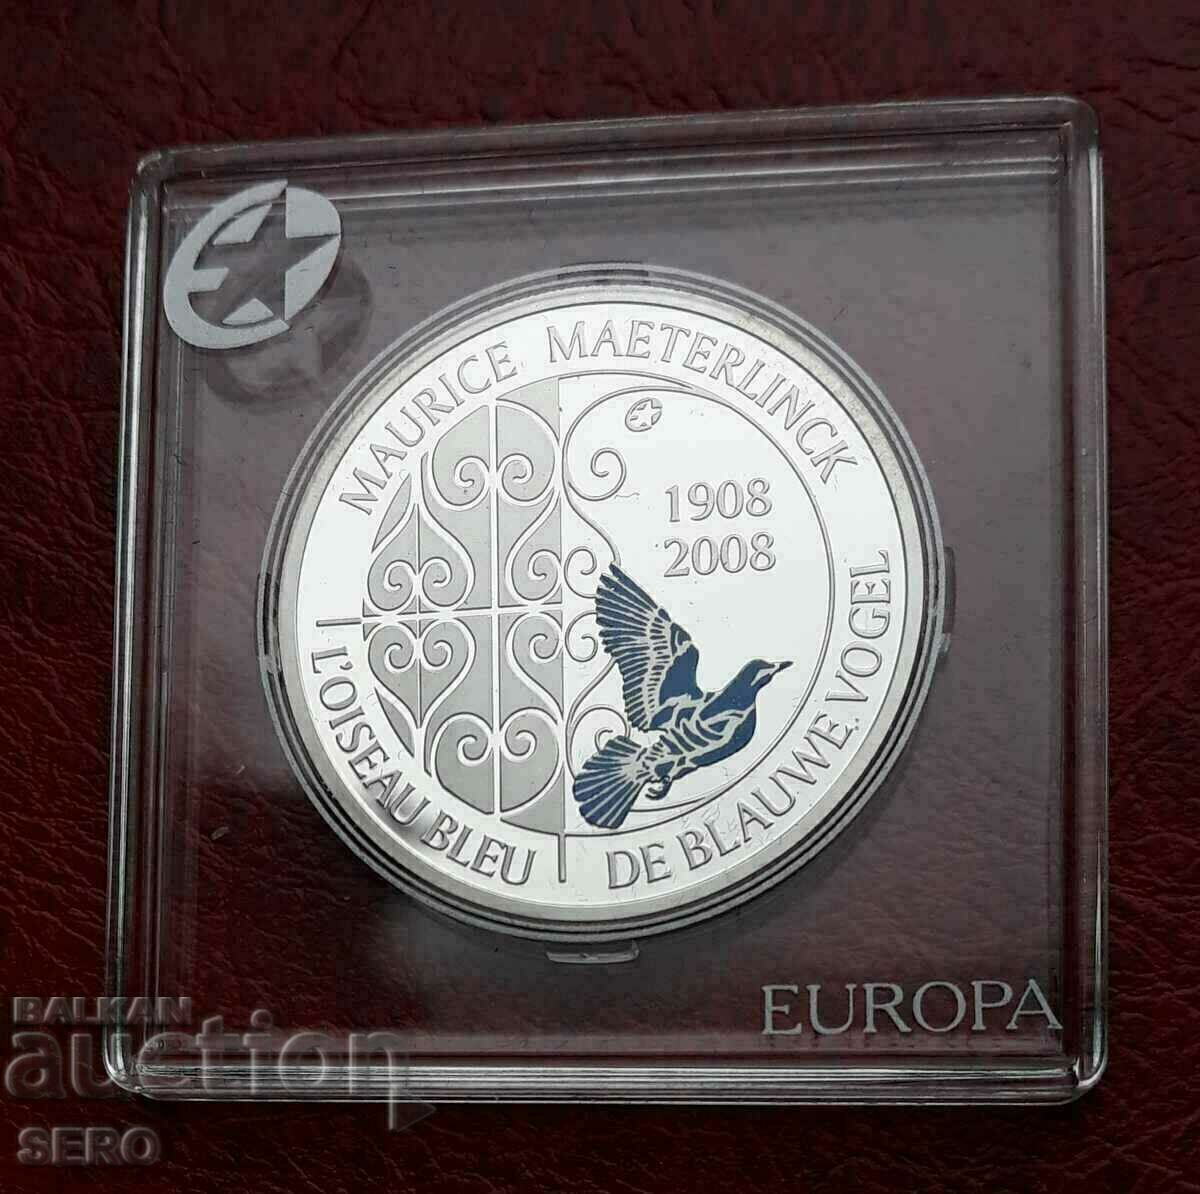 Βέλγιο-10 ευρώ 2008-ασημί σε ωραία κάψουλα-πολύ σπάνιο